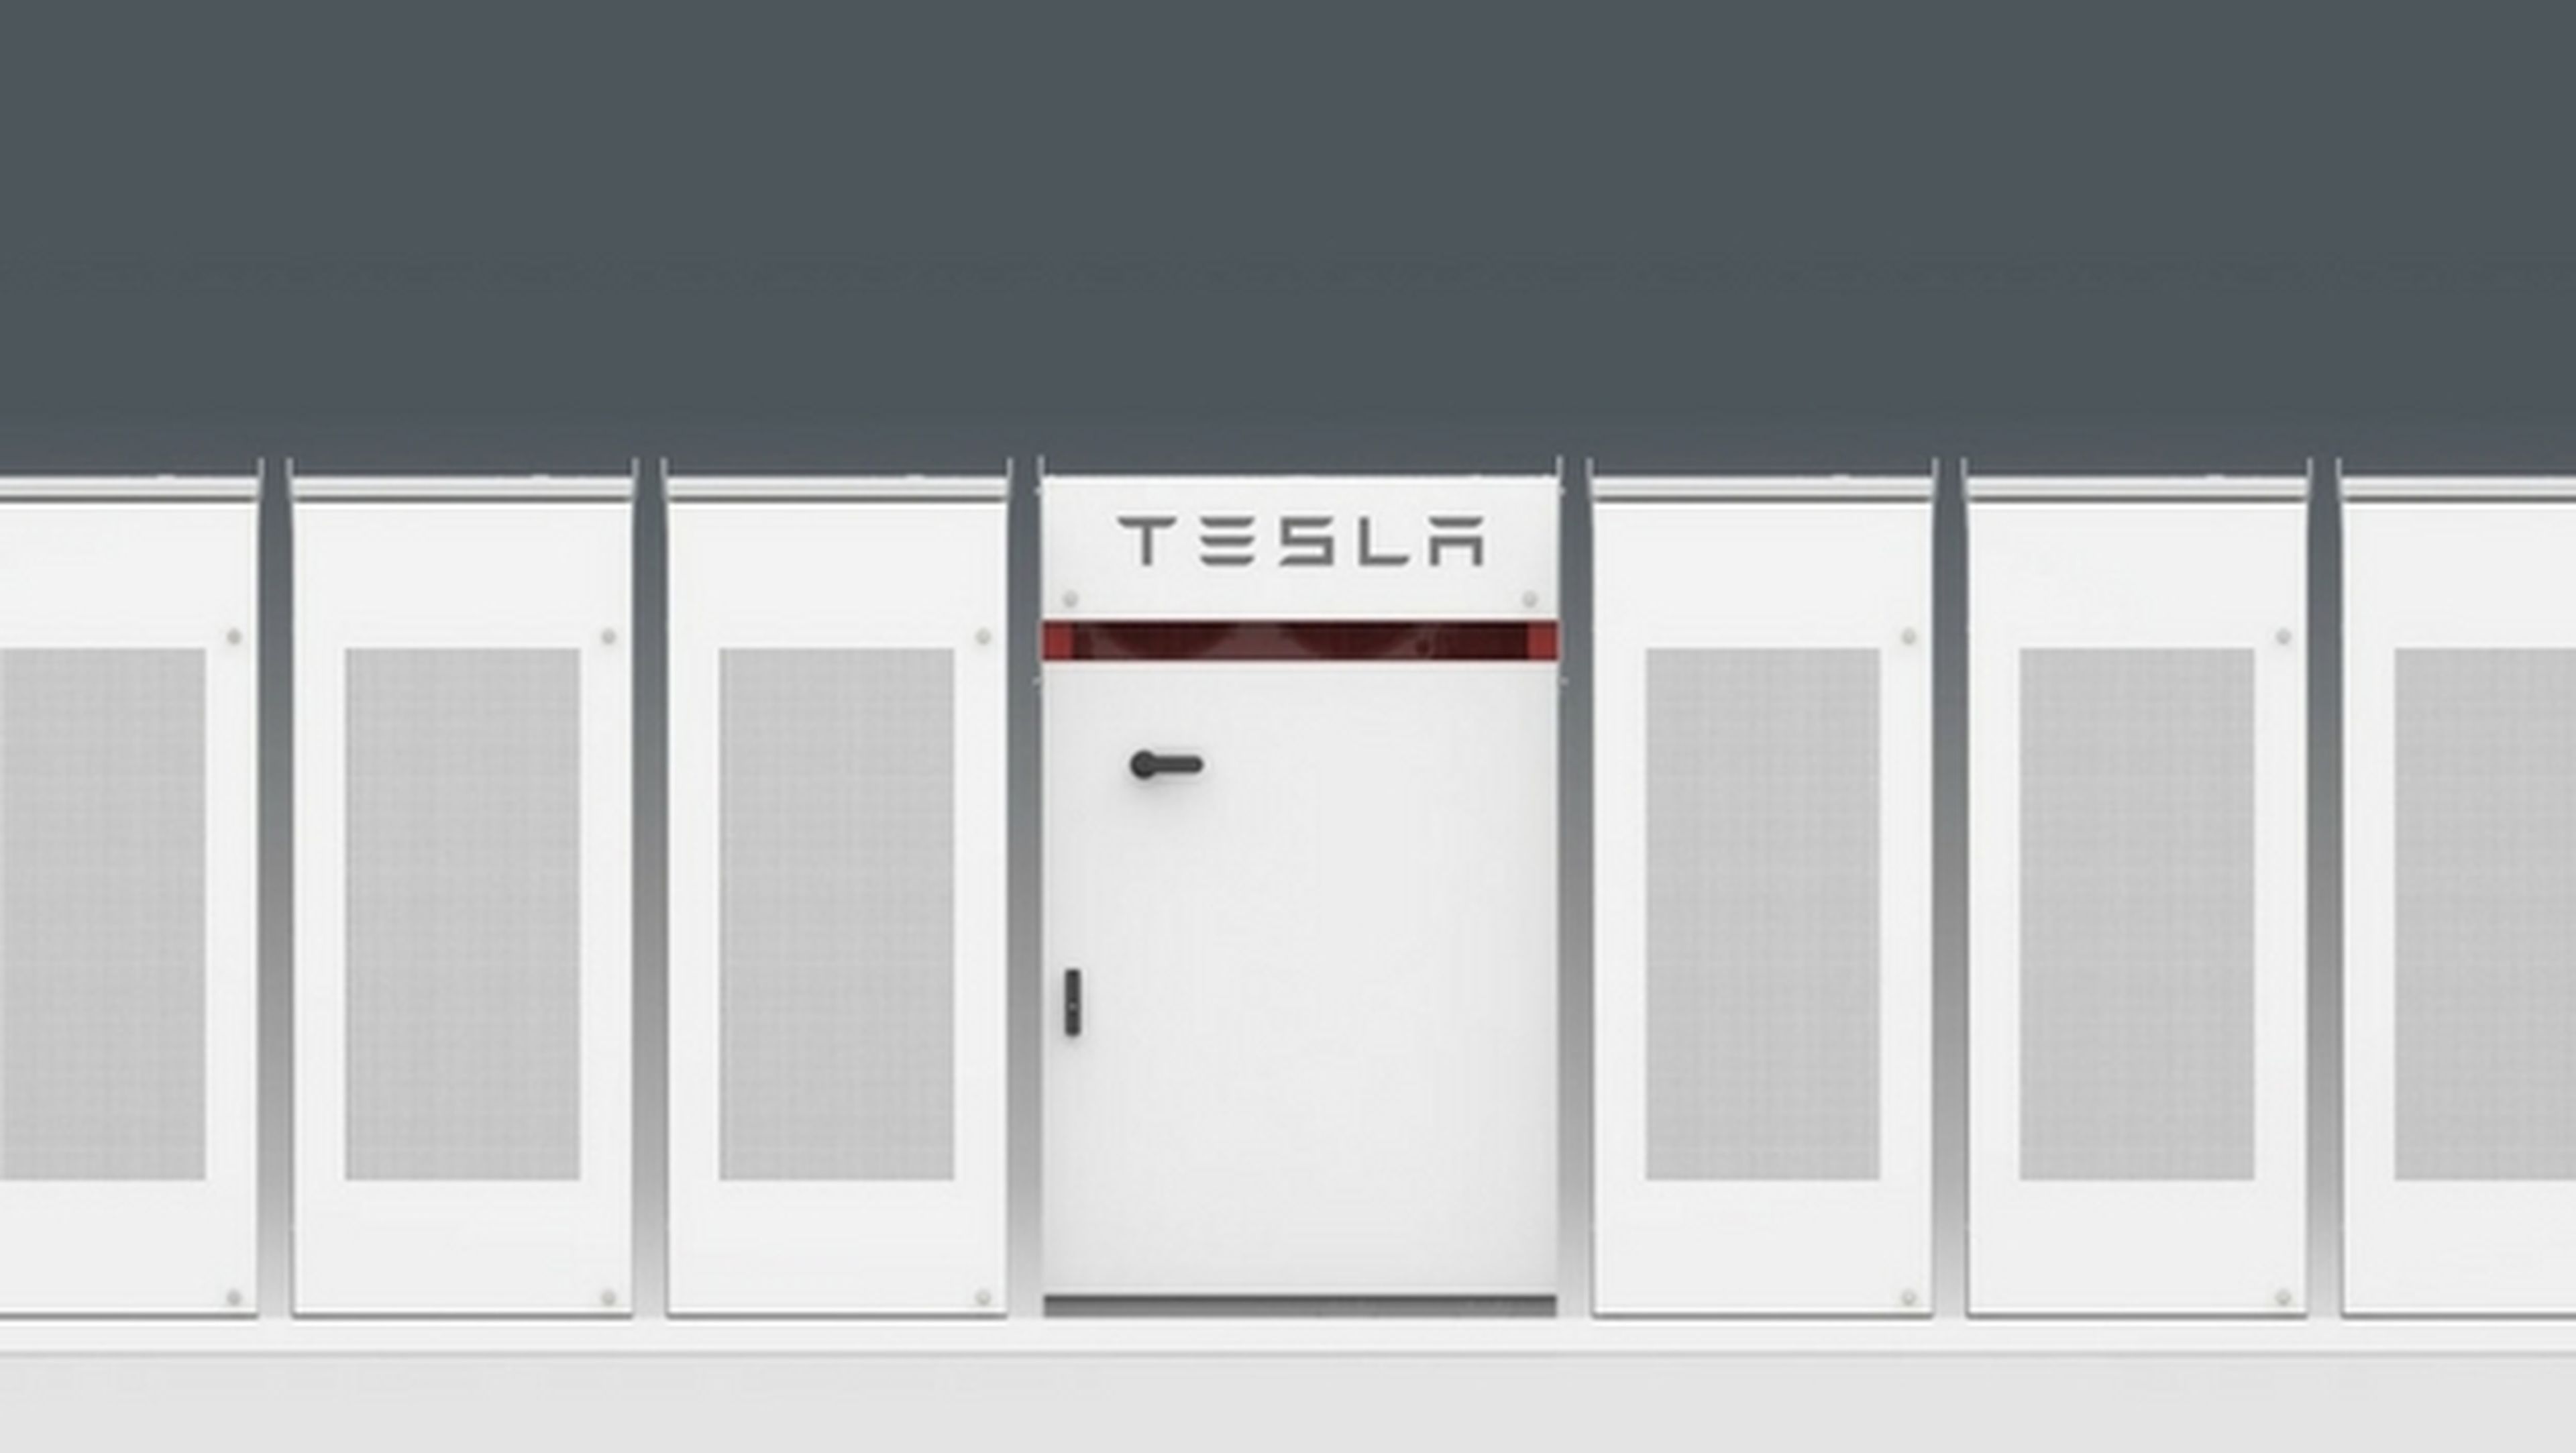 Las baterías Tesla darán suministro eléctrico en lugares remotos